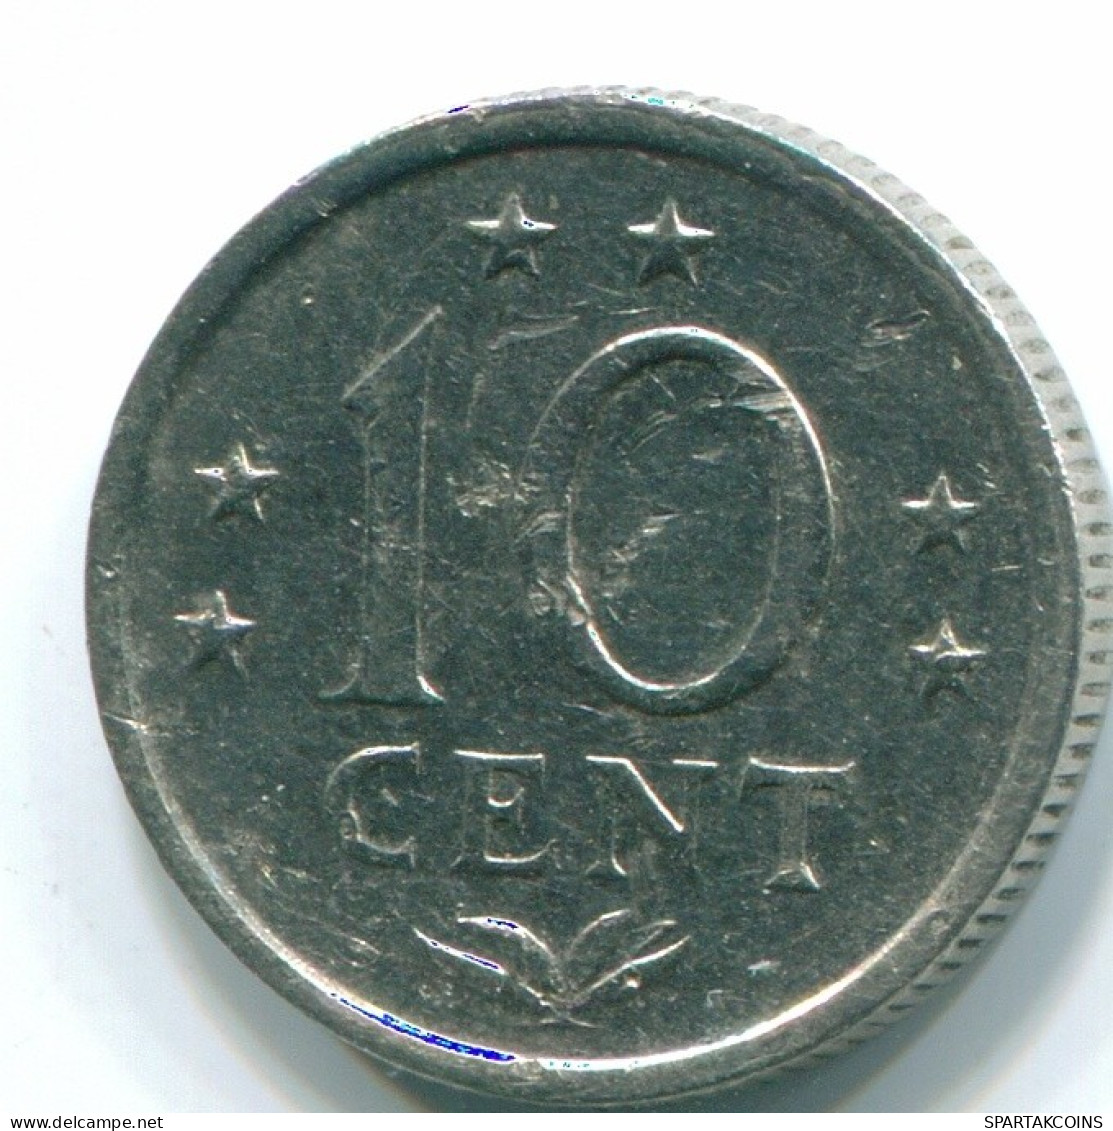 10 CENTS 1971 NIEDERLÄNDISCHE ANTILLEN Nickel Koloniale Münze #S13465.D.A - Antille Olandesi